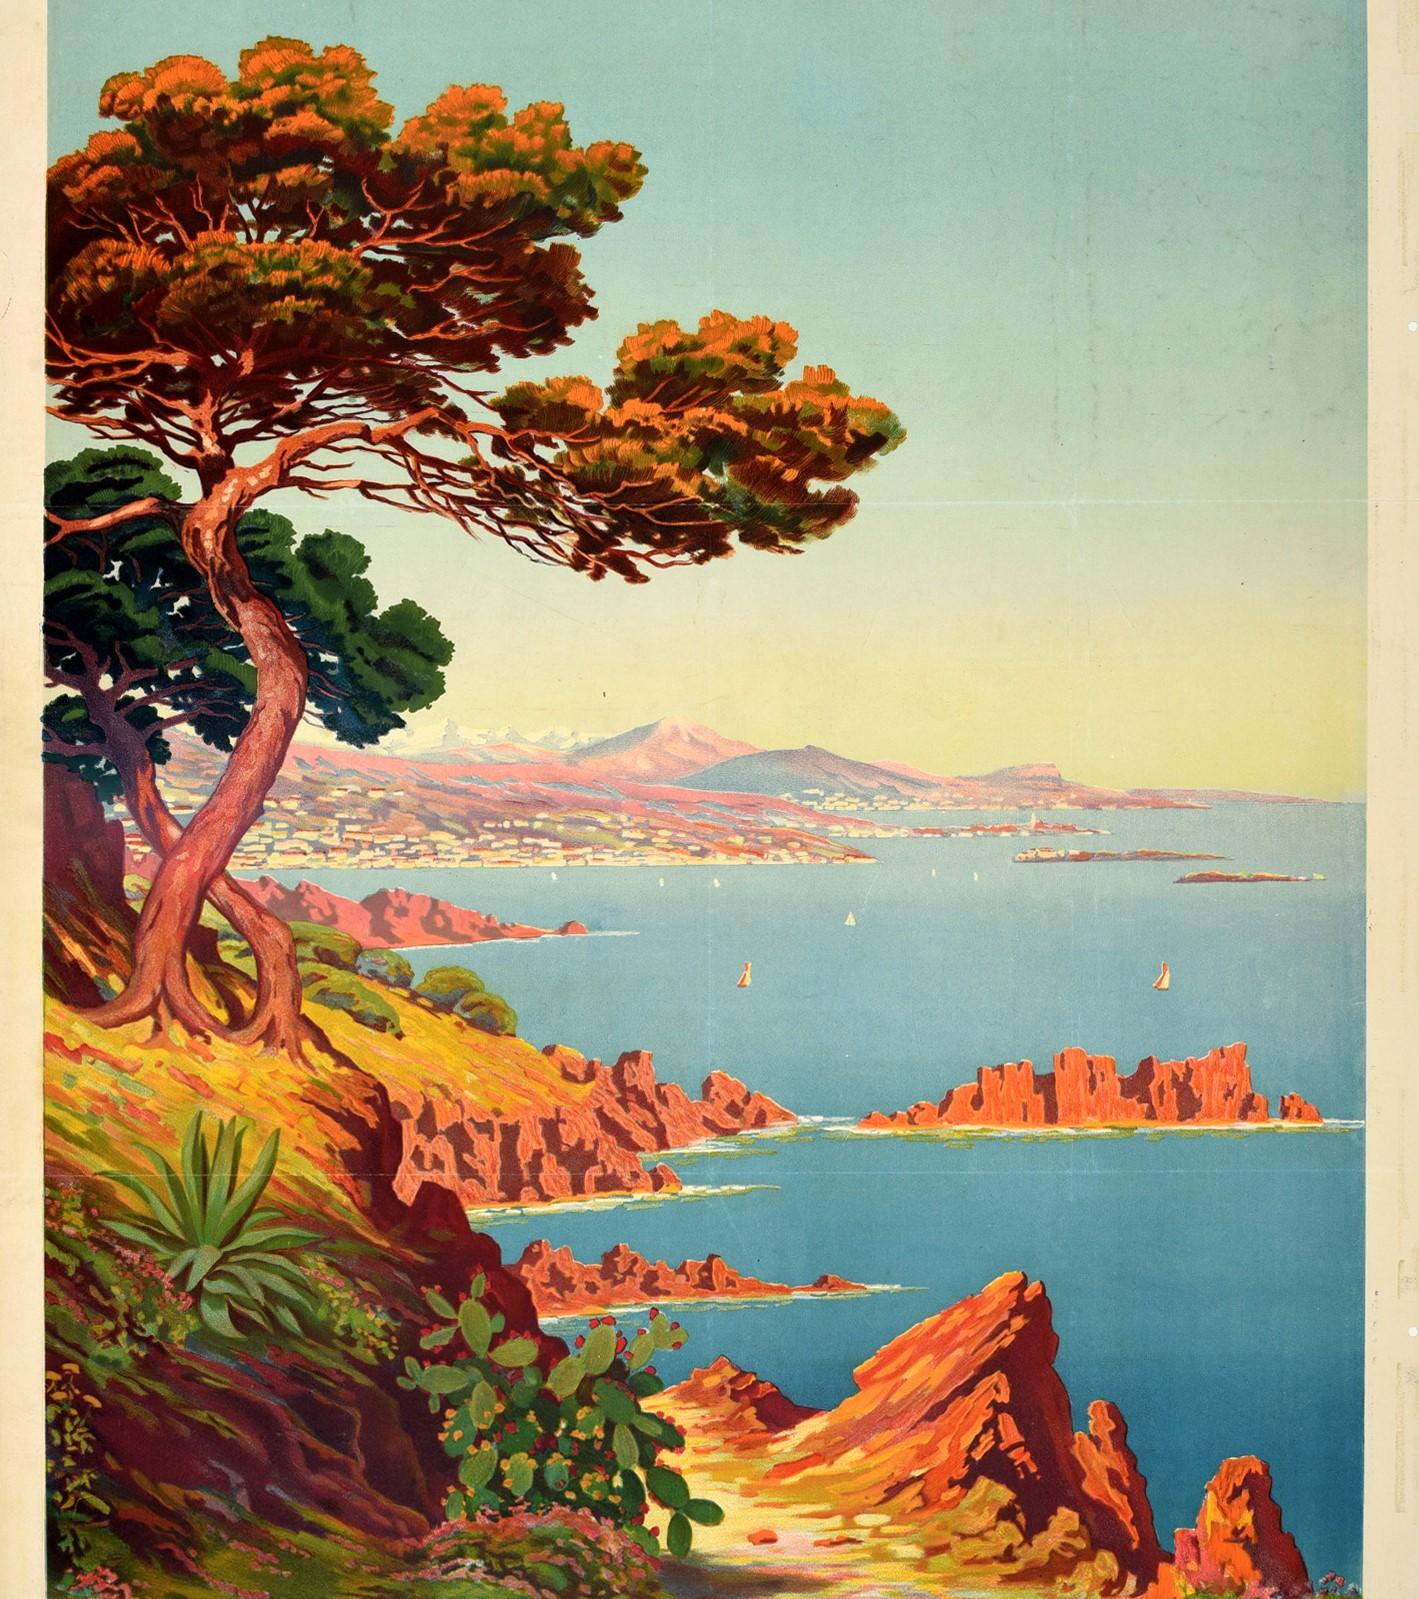 Affiche publicitaire originale de voyage vintage pour La Cote D'Azur / La Côte d'Azur présentant une vue côtière pittoresque du peintre Charles Adelin Morel de Tanguy (1857-1930) représentant des fleurs et des arbres le long du chemin de collines